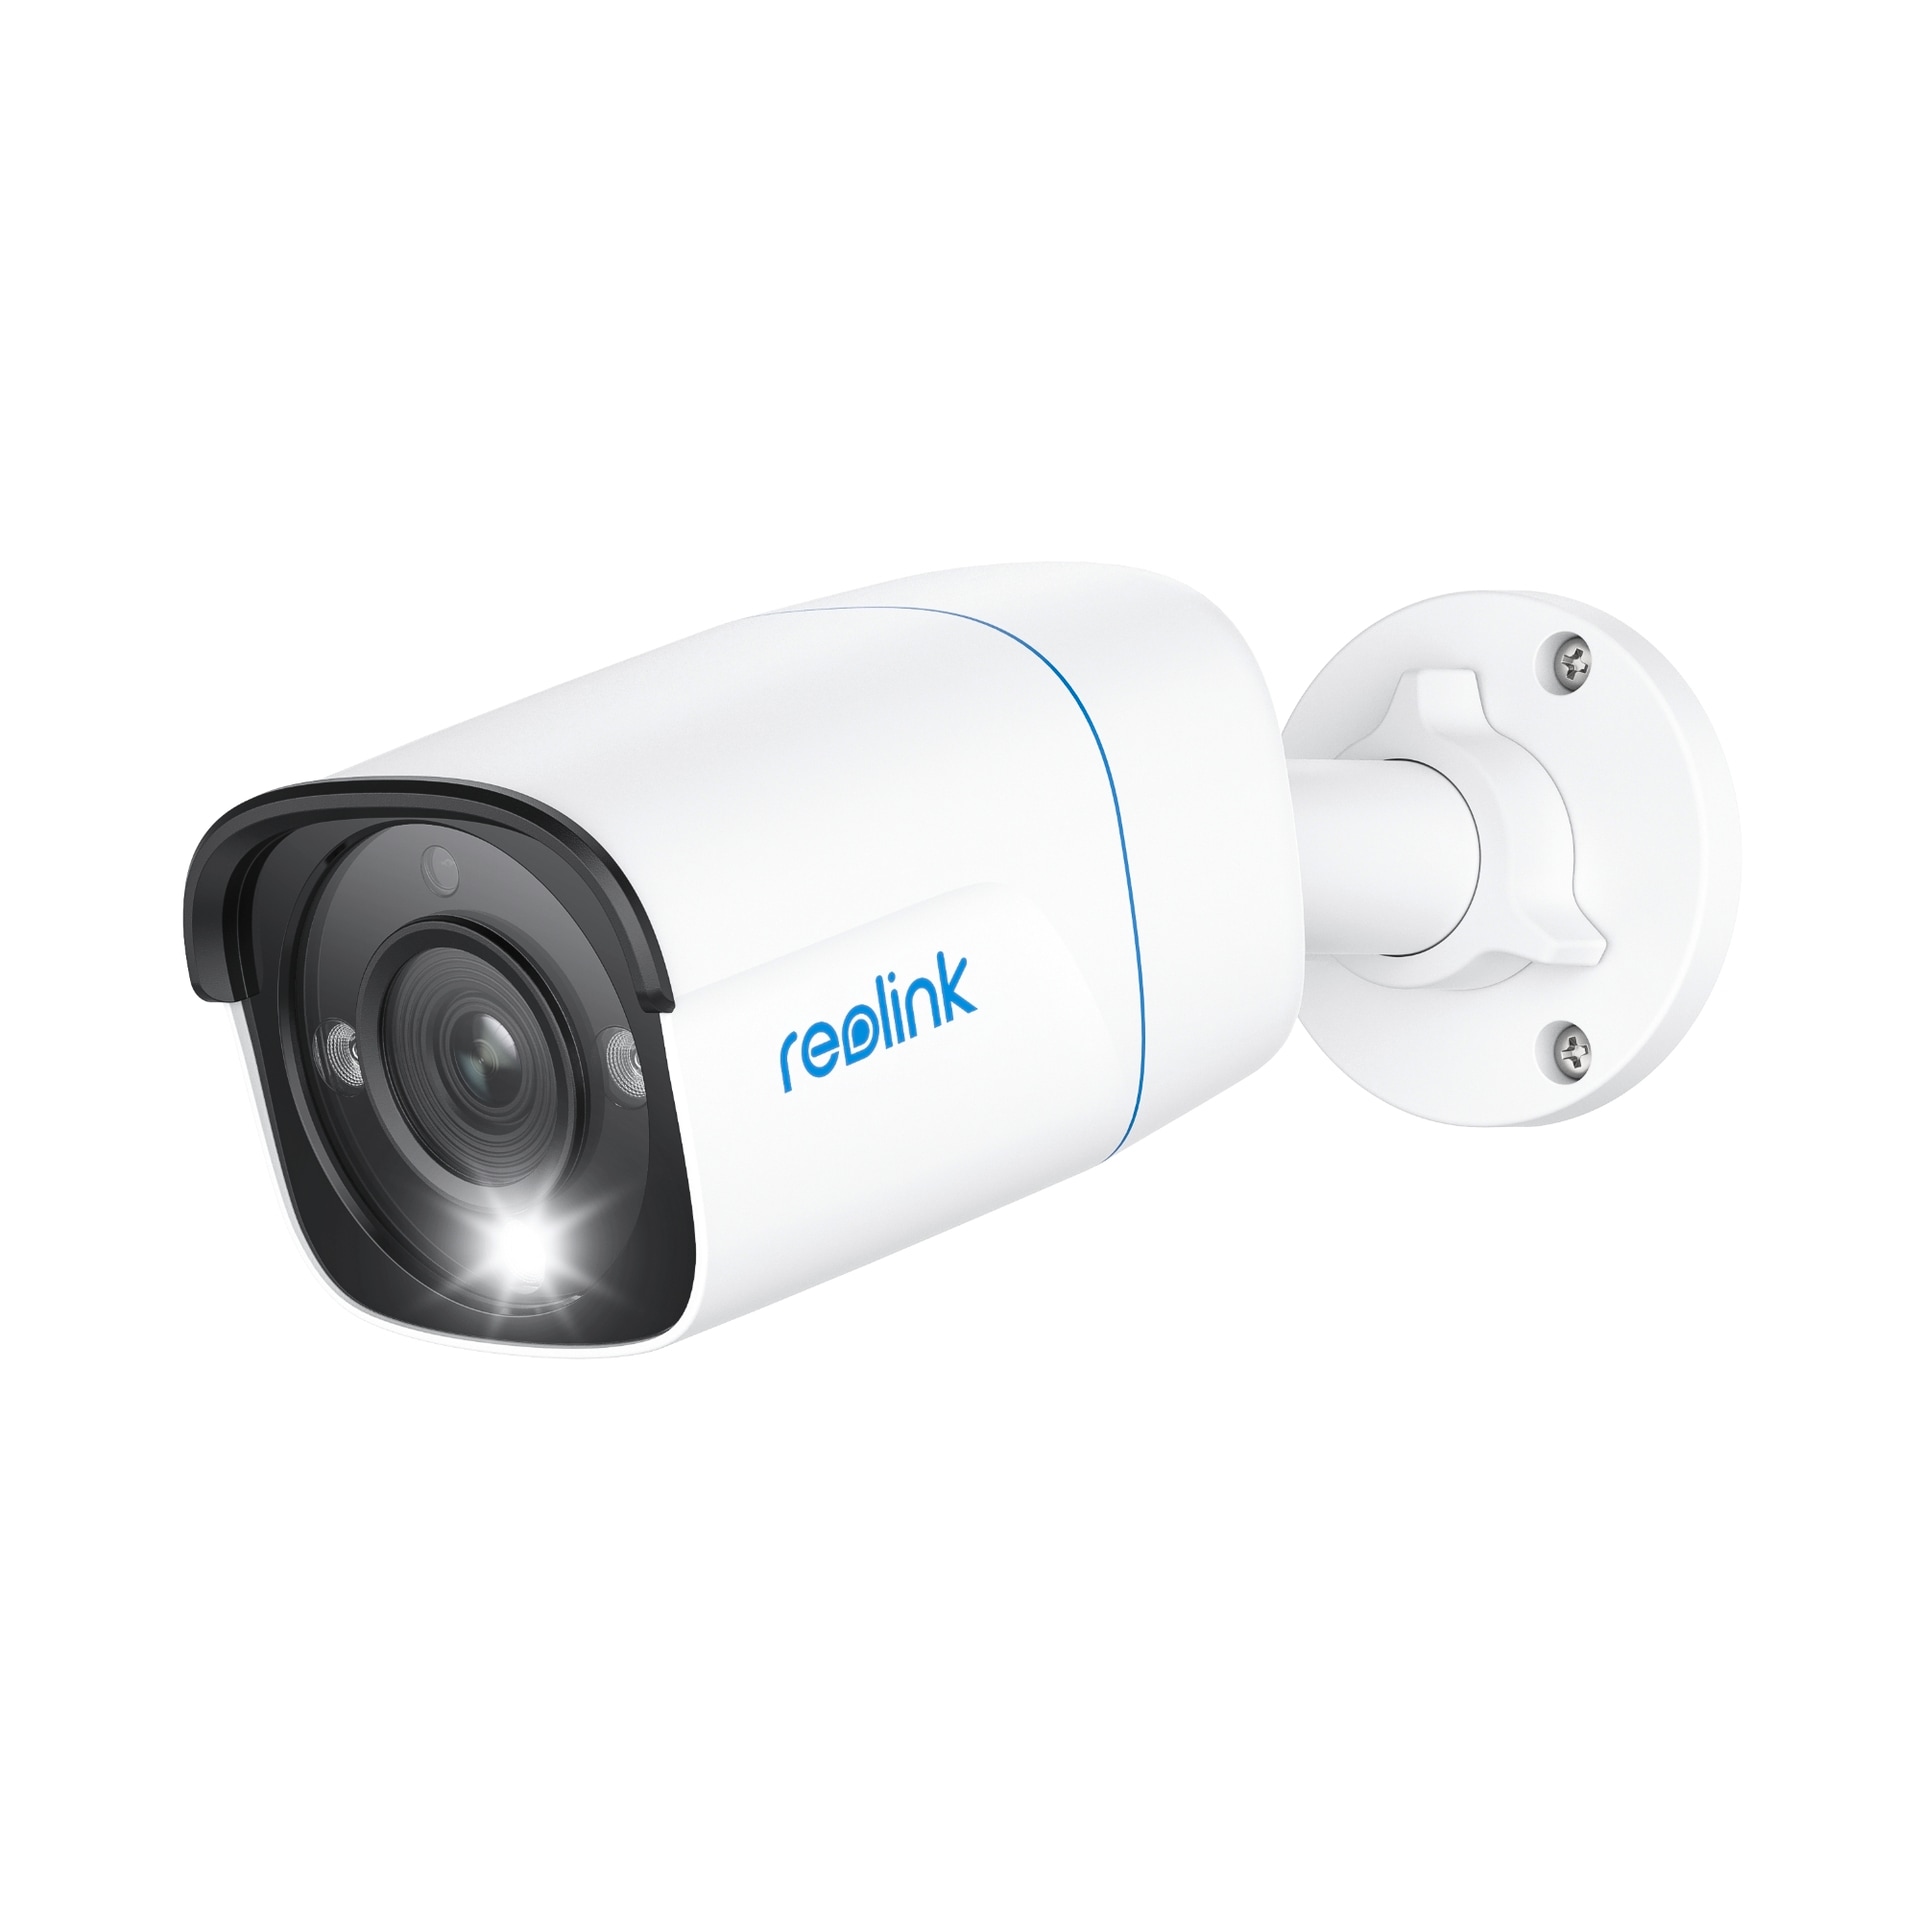 Reolink Überwachungskamera »P330 - Smart 4K 8MP UHD Outdoor PoE Sicherheitskamera«, Außenbereich, mit 256GB Kapazität, Audioaufzeichnung & Nachtsicht